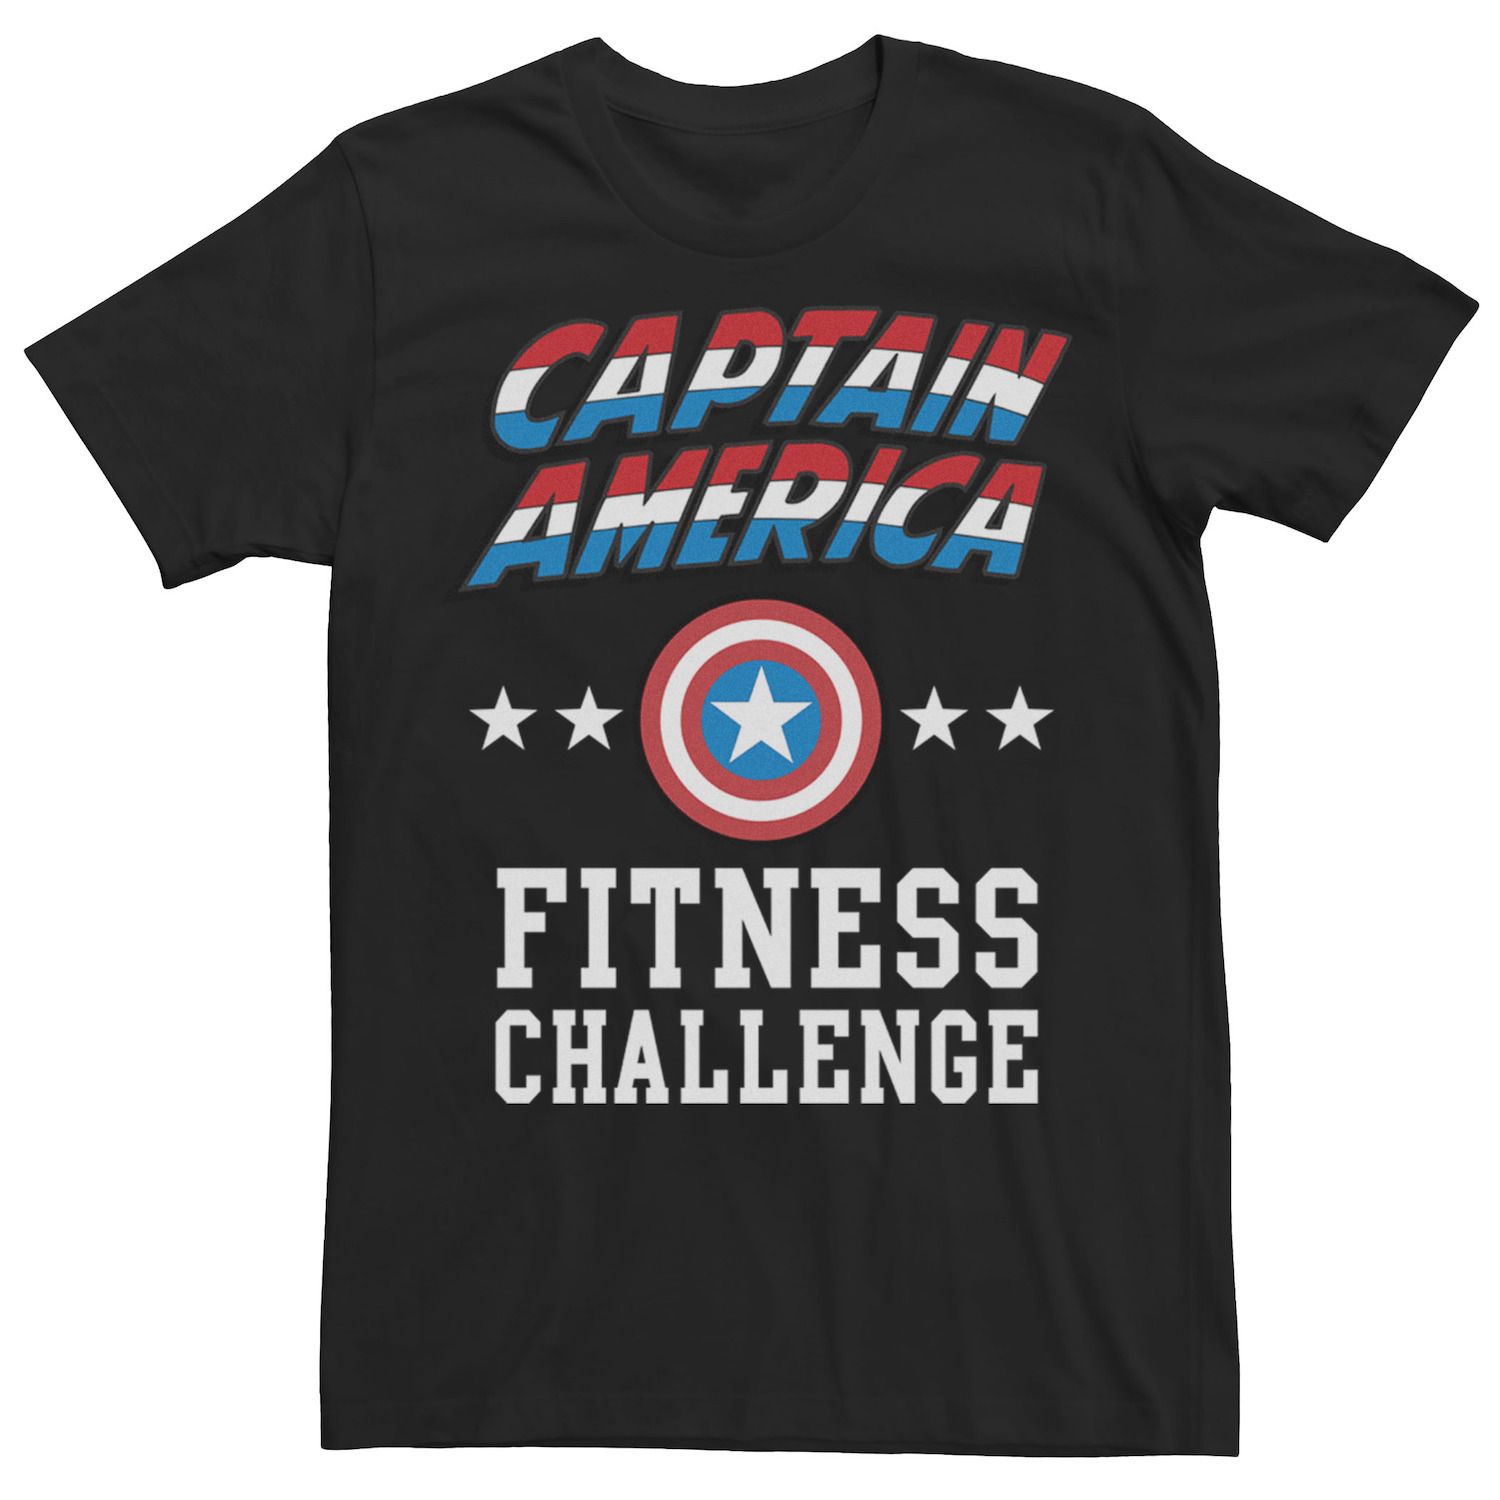 Мужская футболка для поднятия тяжестей «Капитан Америка» для фитнеса Marvel